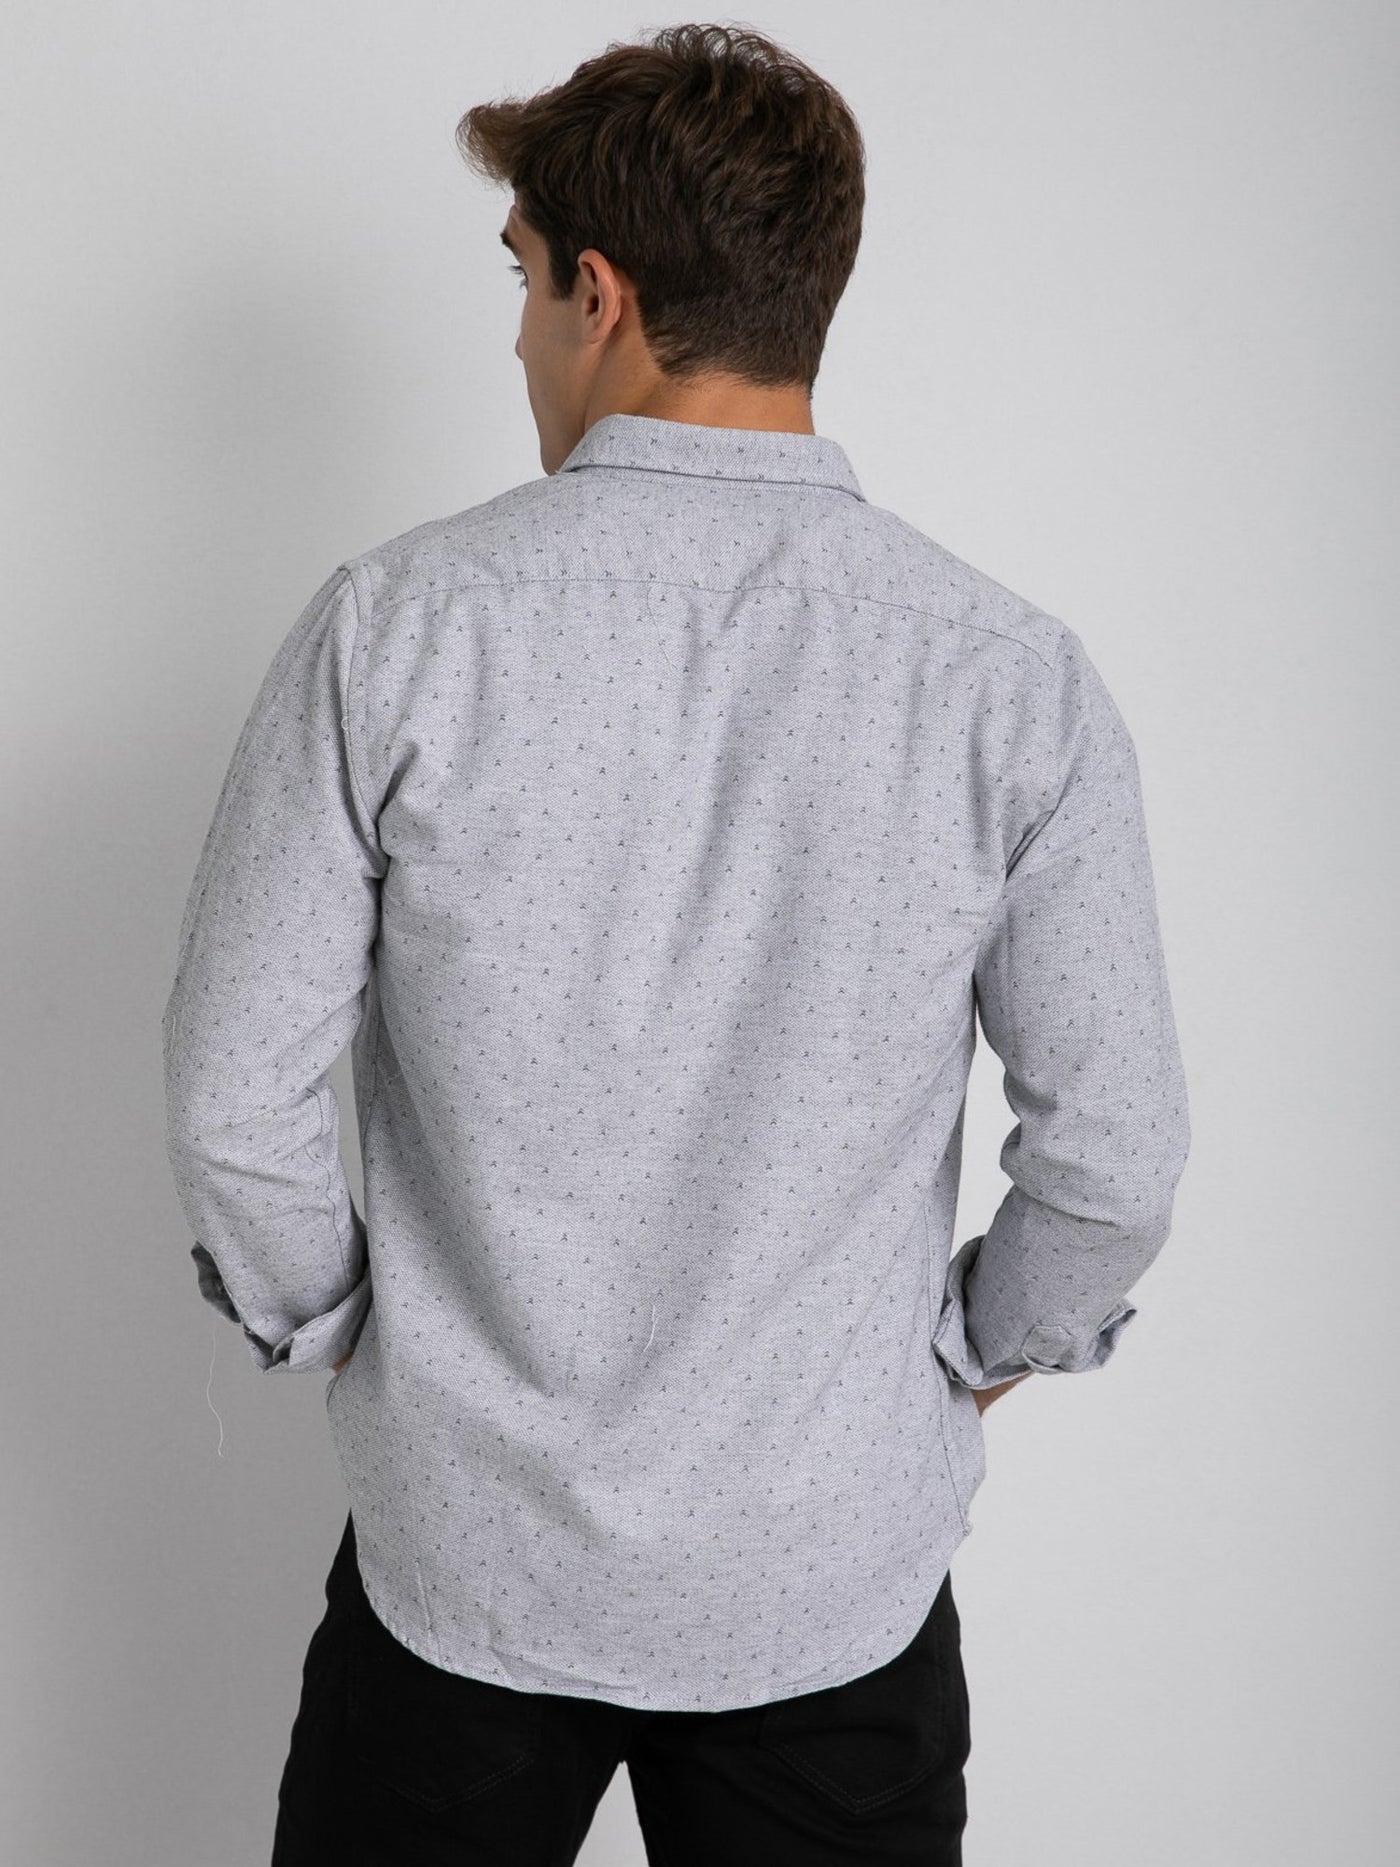 Premoda Mens Long Sleeve Printed Textured Shirt